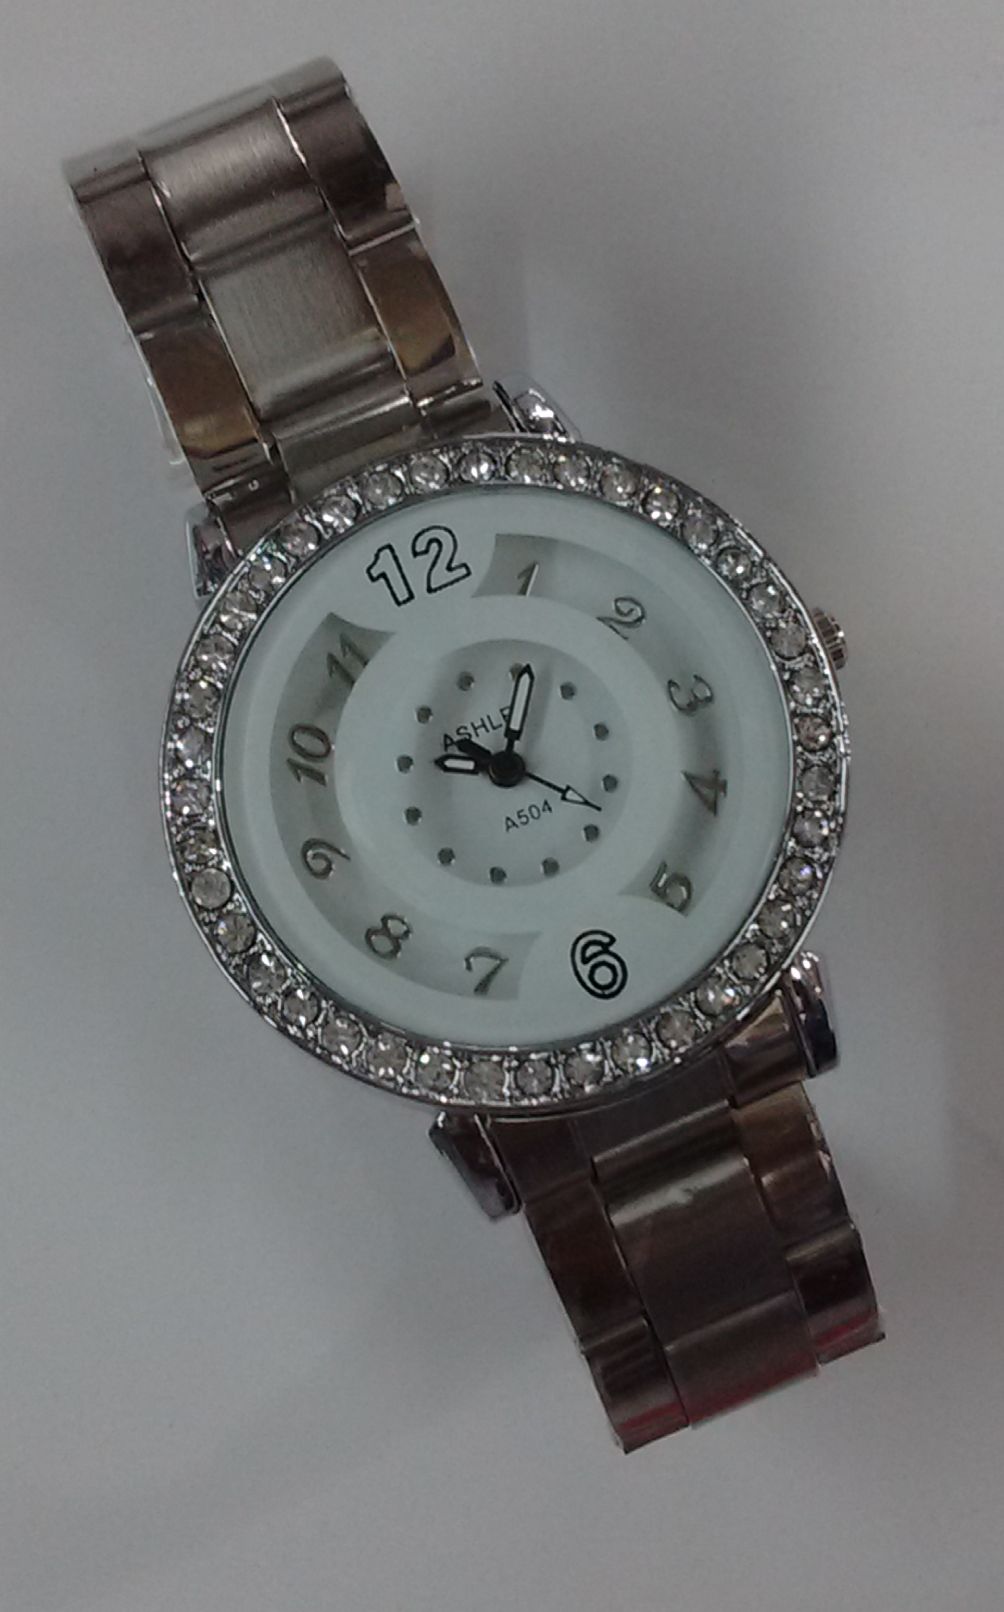 Buy Beautiful Attractive Bracelet Look Watch For Girls Online @ ₹345 ...